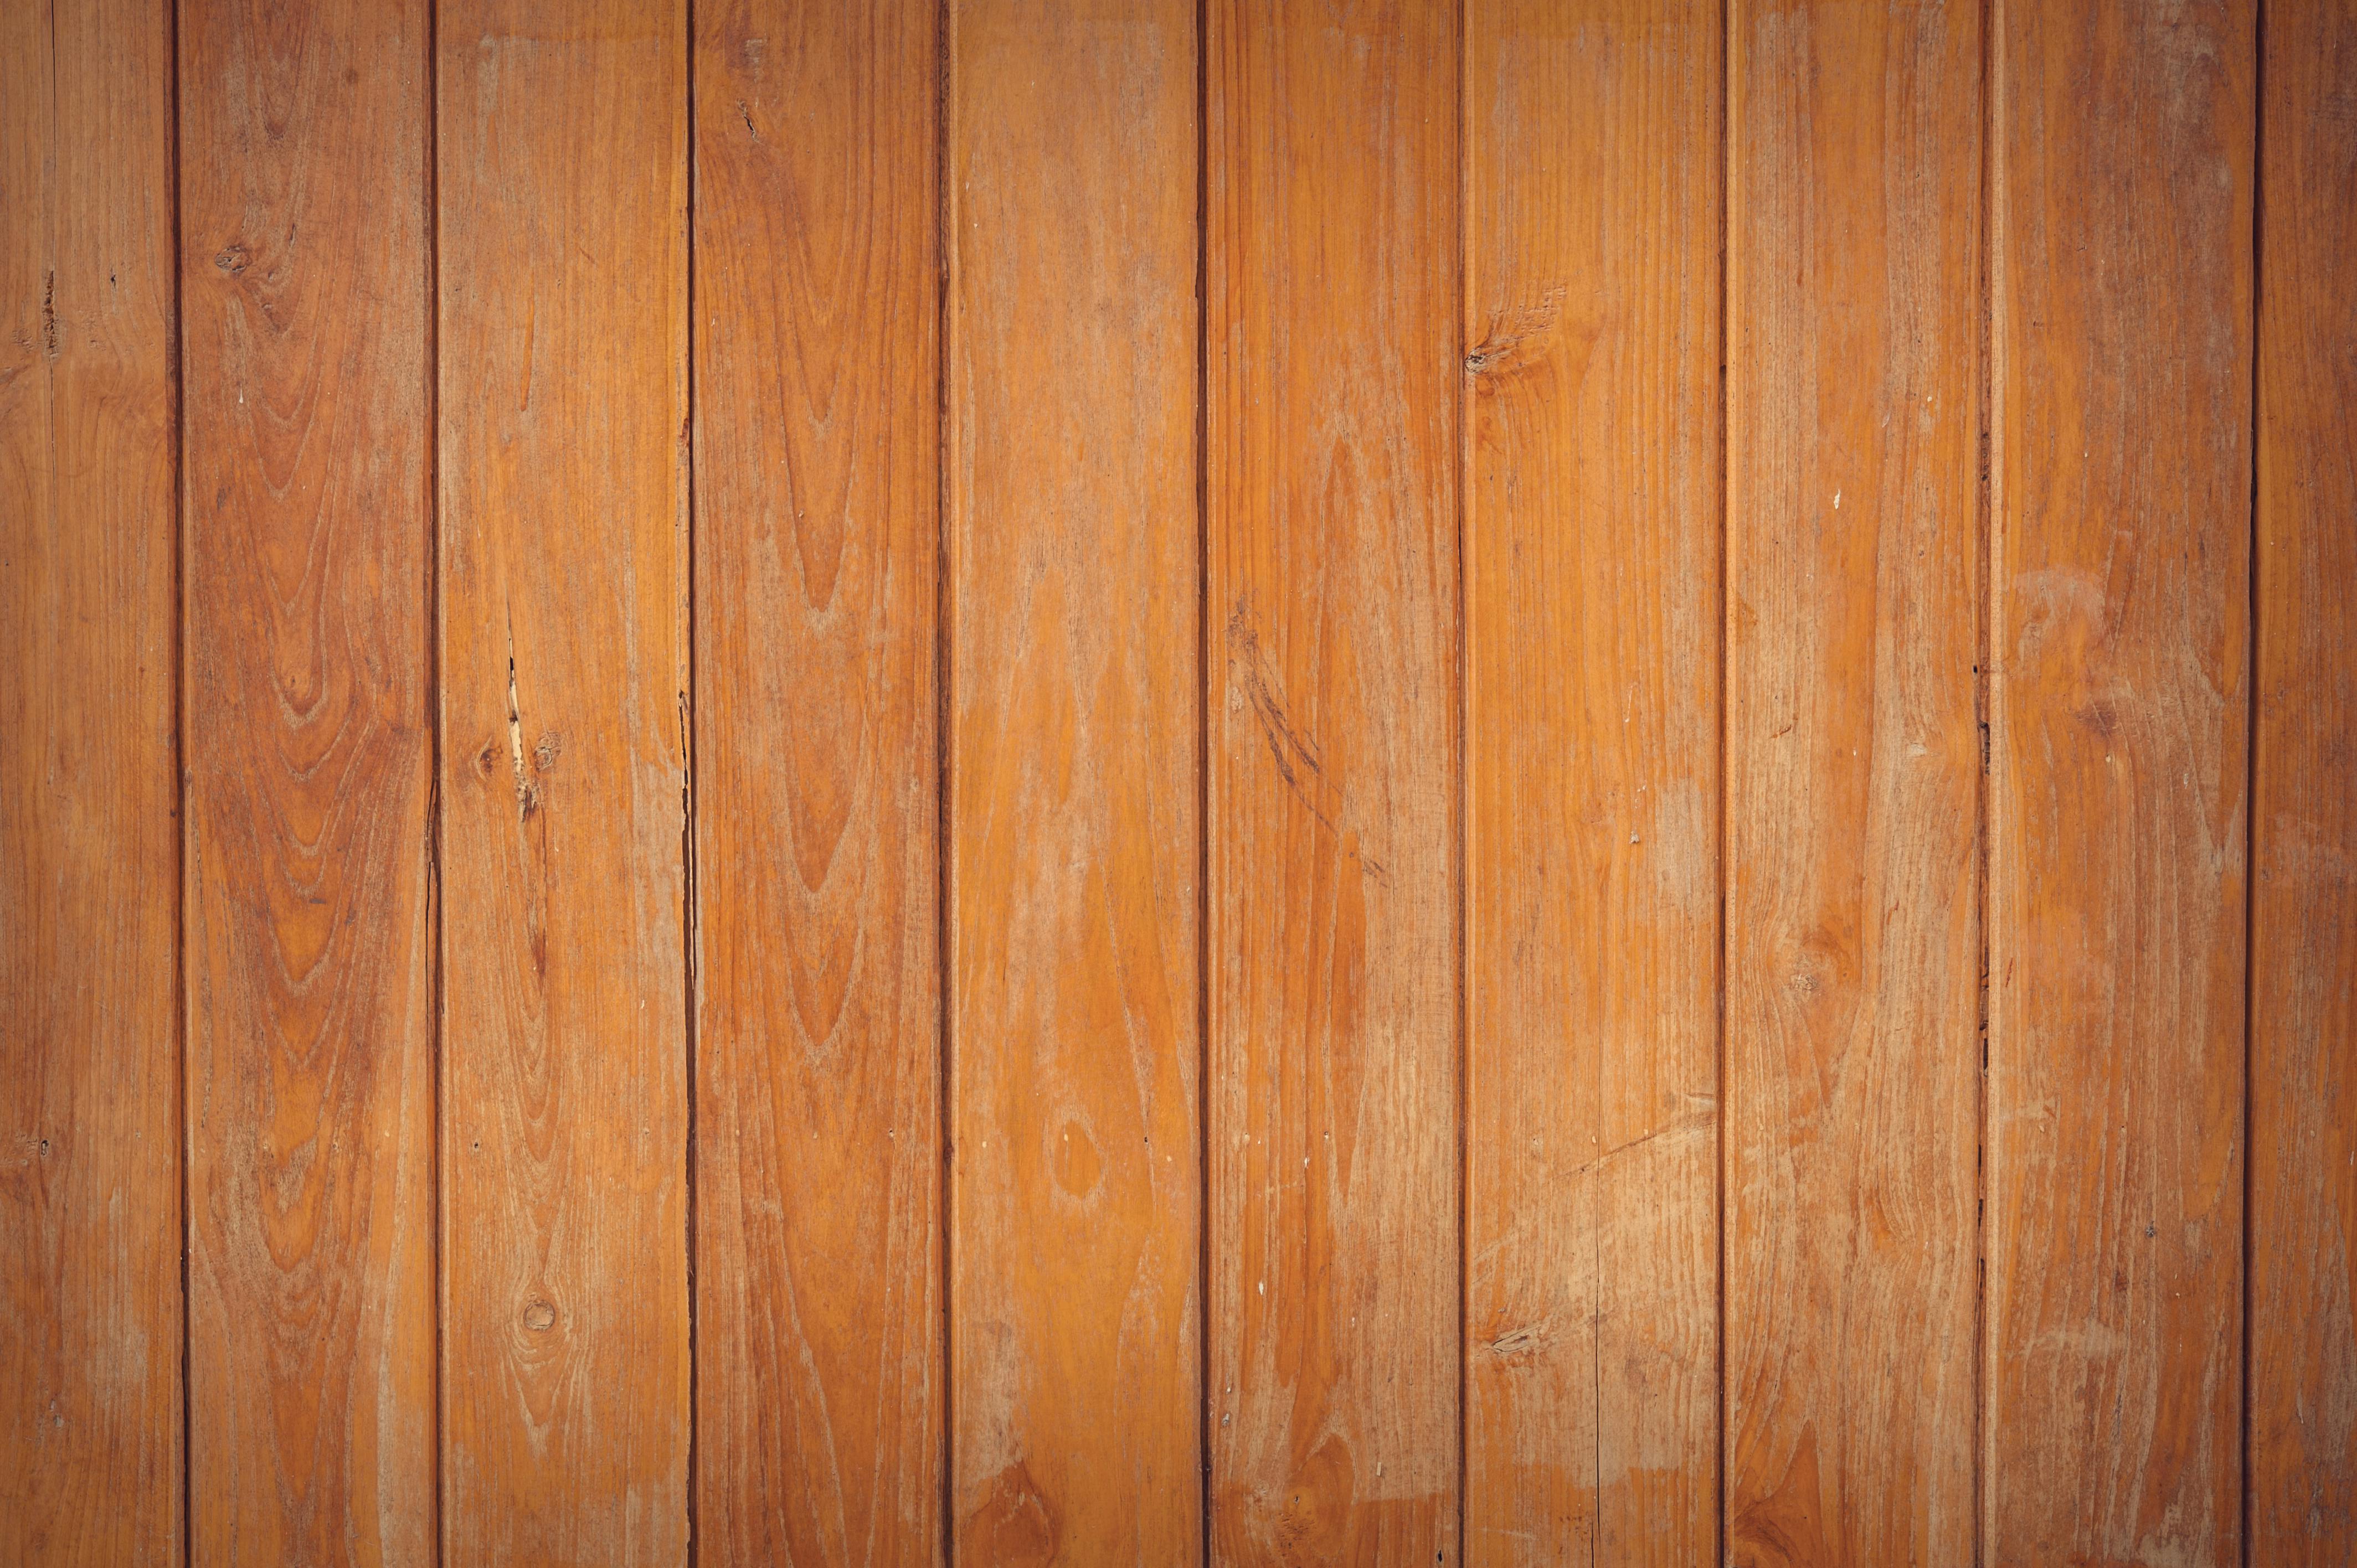 Vân gỗ là gì? Ứng dụng trong cửa thép vân gỗ